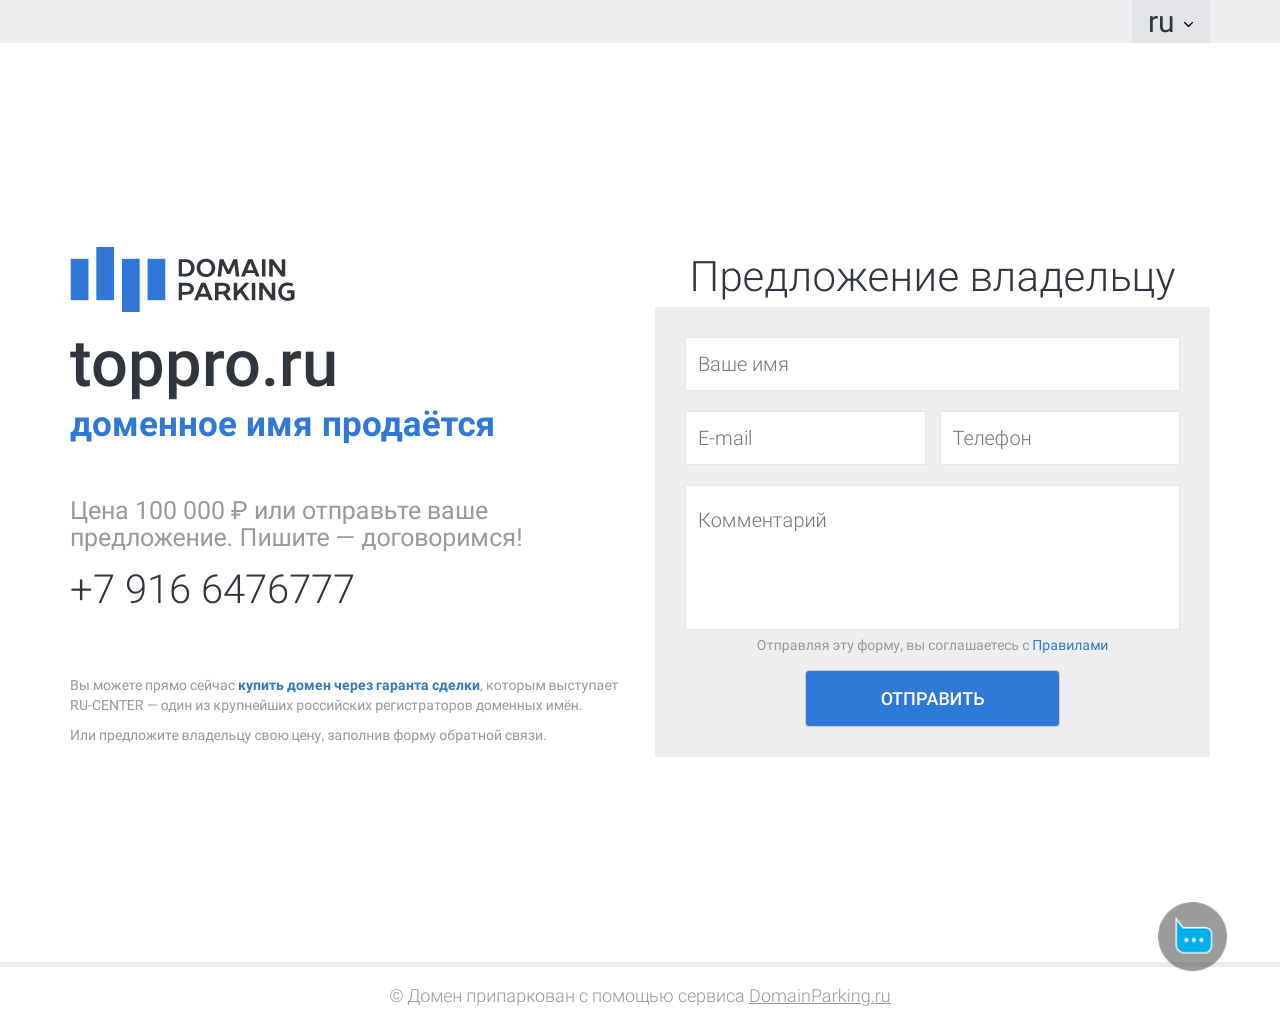 Изображение сайта toppro.ru в разрешении 1280x1024